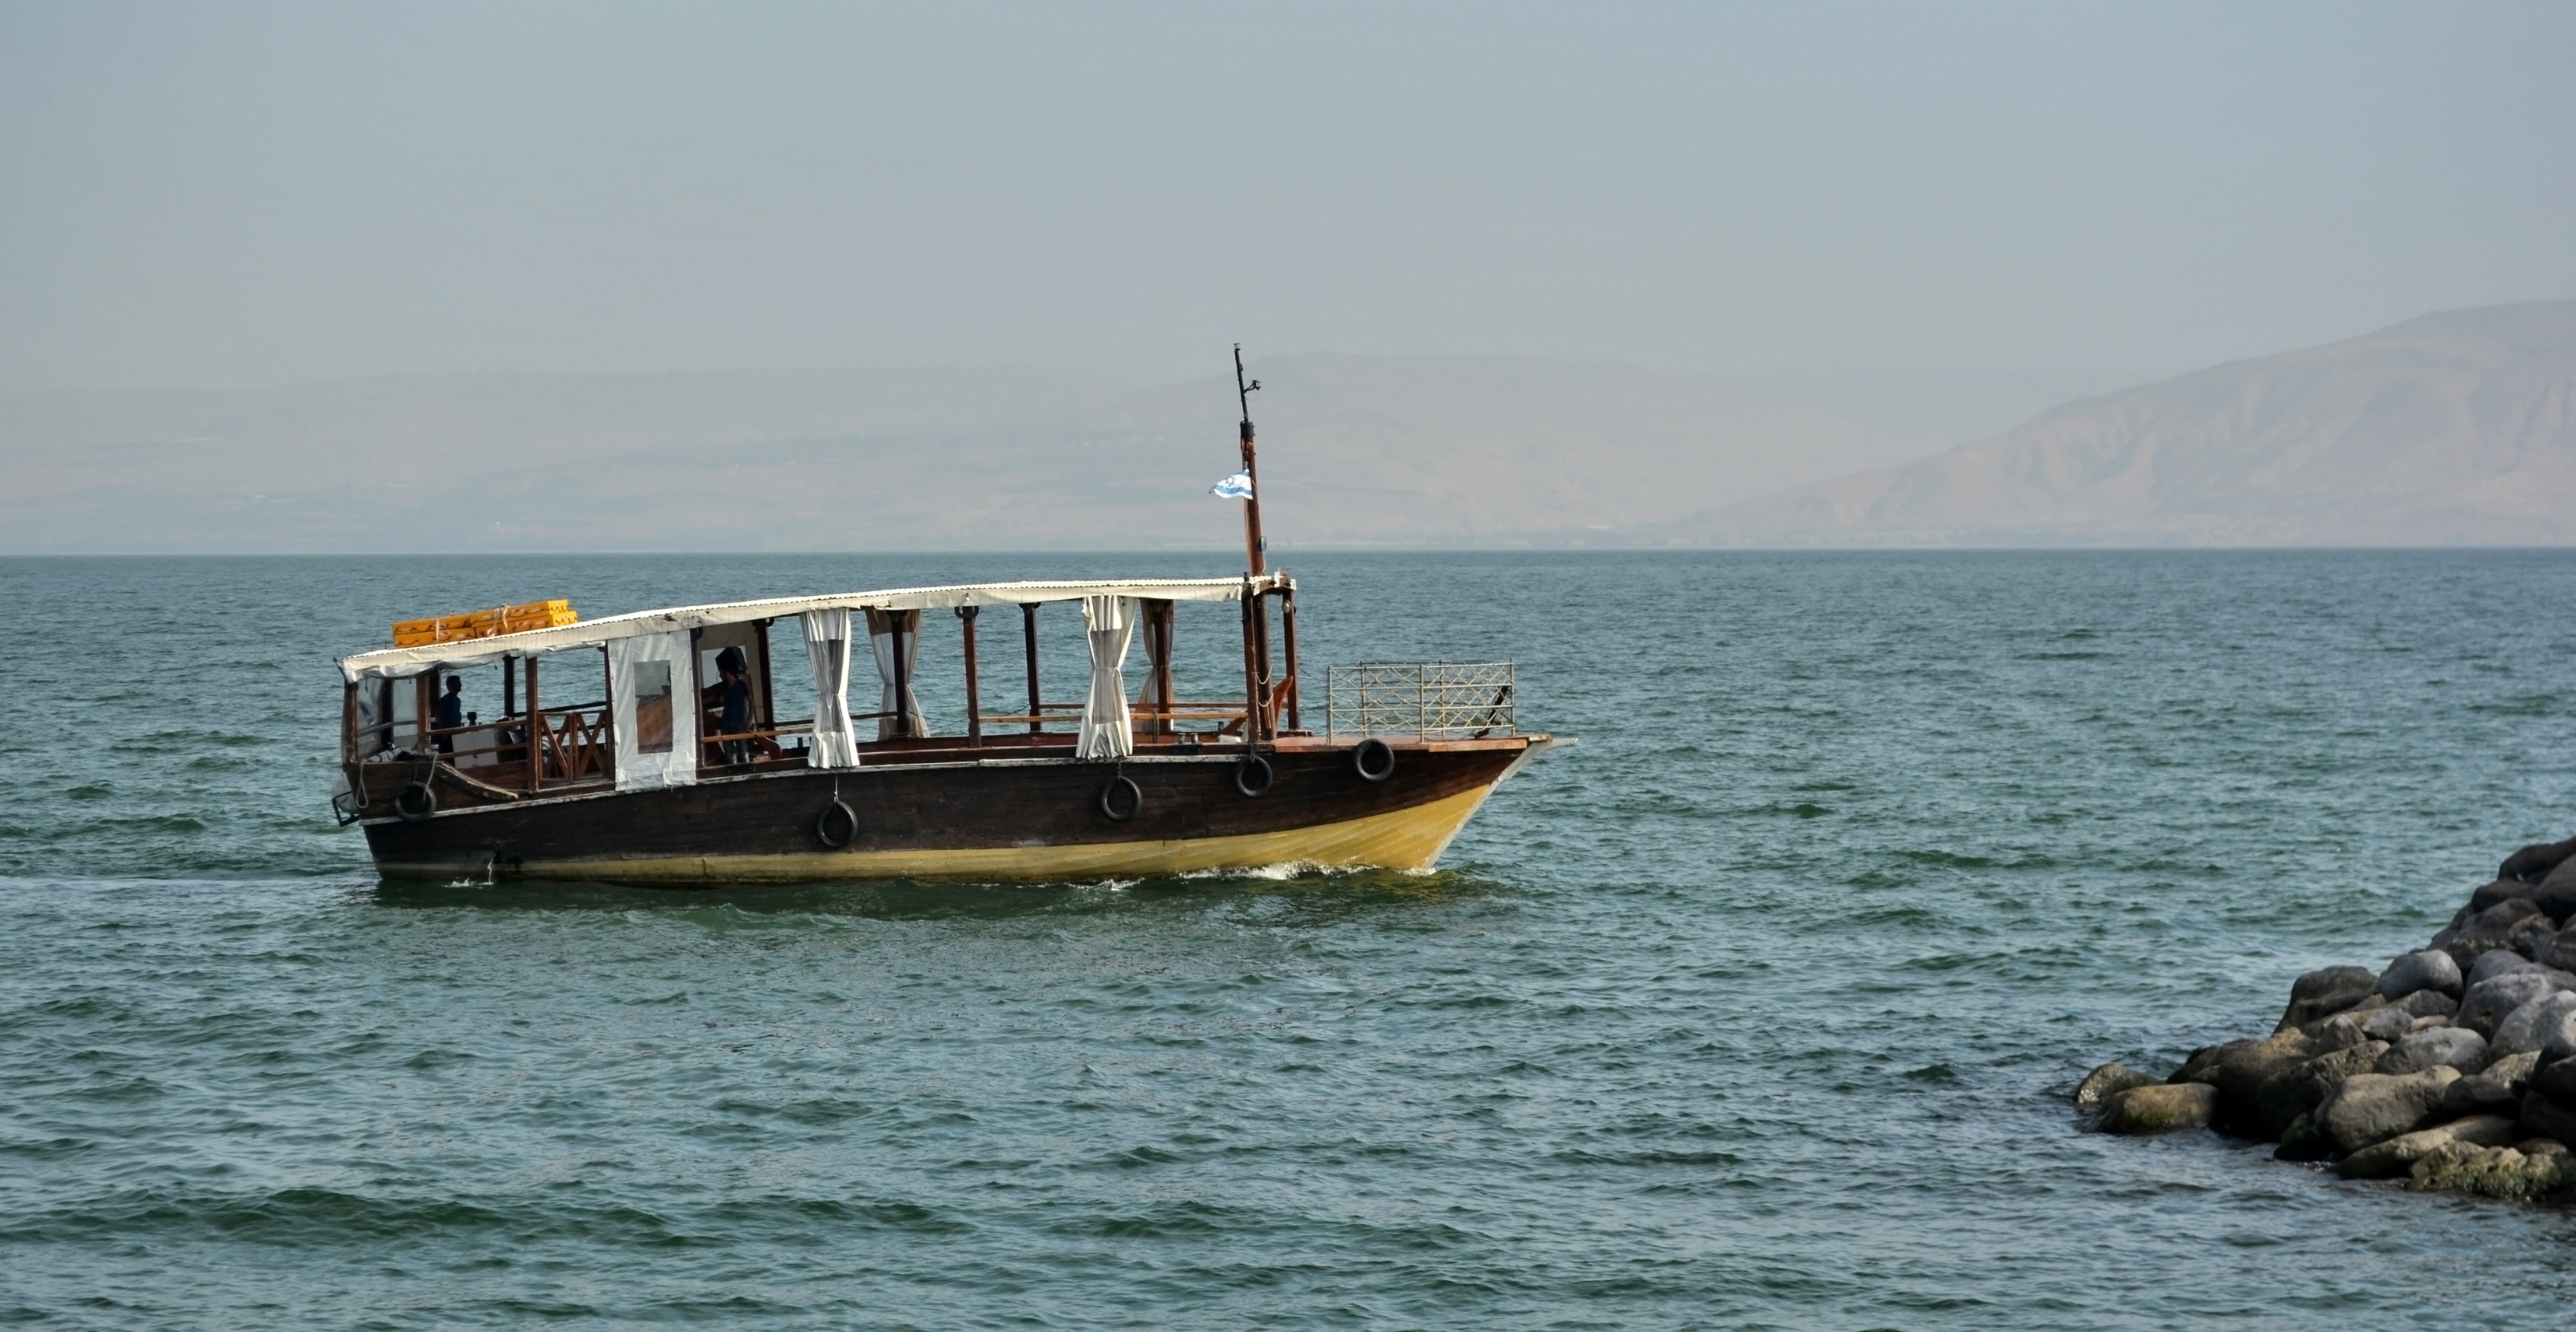 Wooden longboat, Israel. 01